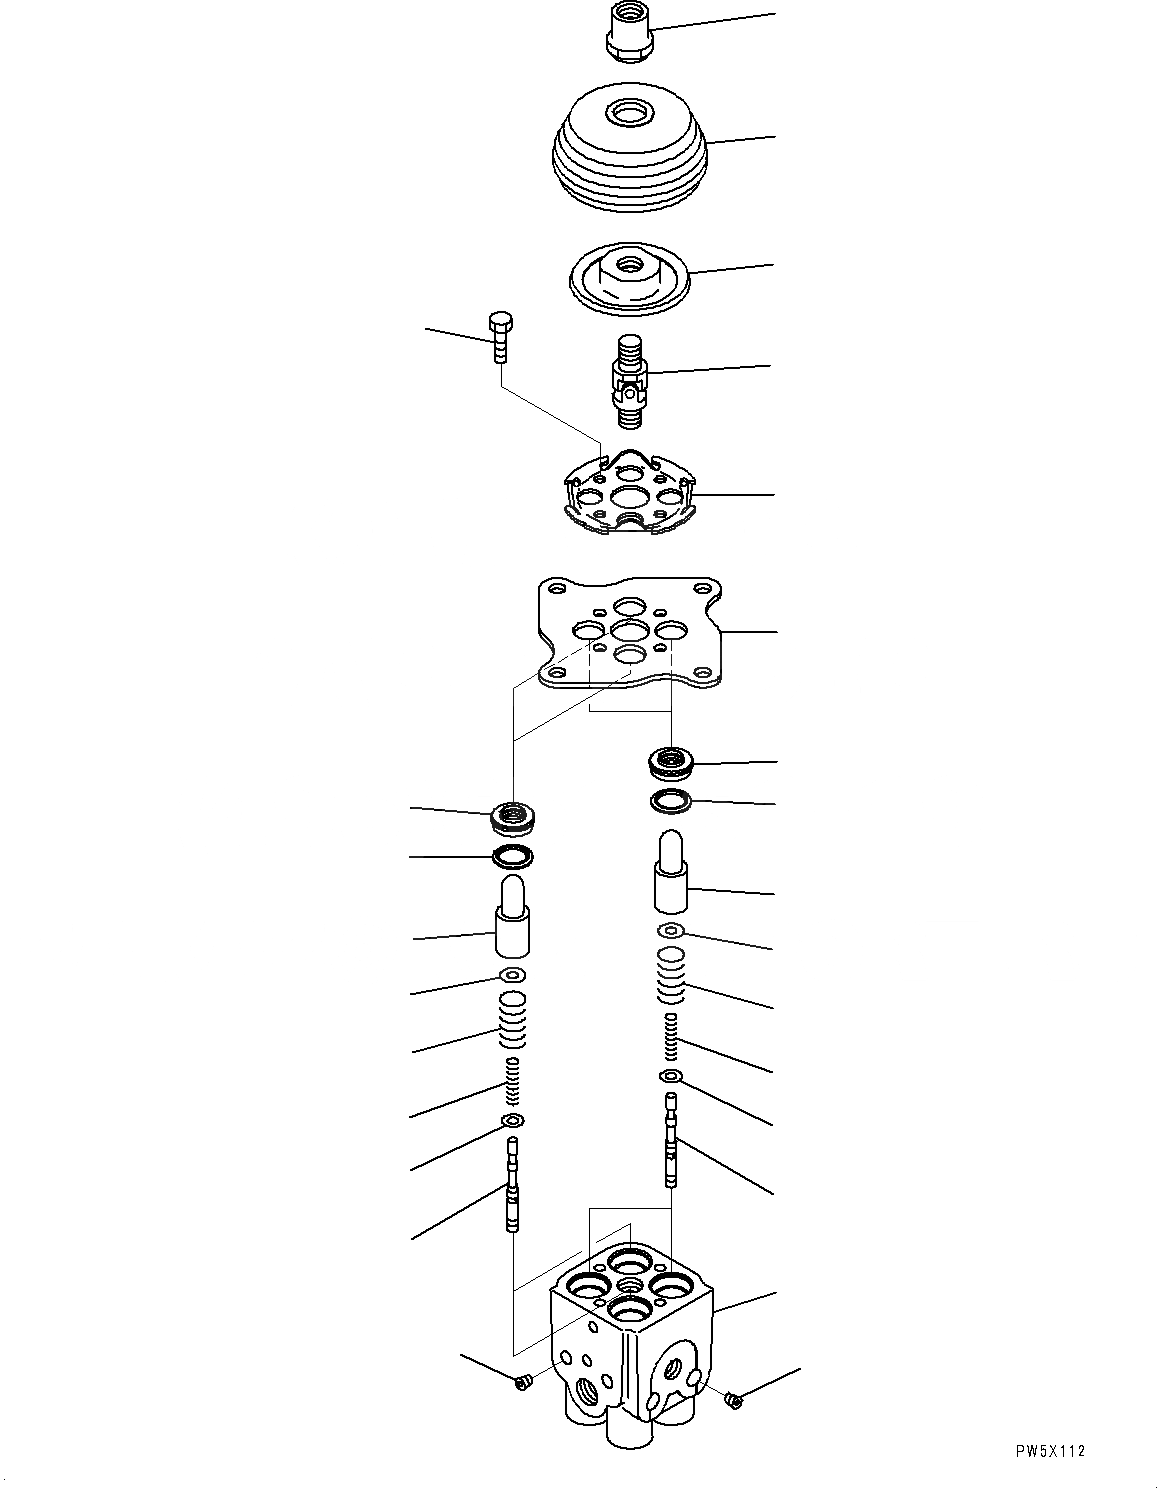 Схема запчастей Komatsu PC450-8 - КАБИНА (ПОЛ, КЛАПАН PPCДЛЯ РАБОЧ. ОБОРУД-Я, ЛЕВ.) (/) K [КАБИНА ОПЕРАТОРА И СИСТЕМА УПРАВЛЕНИЯ]